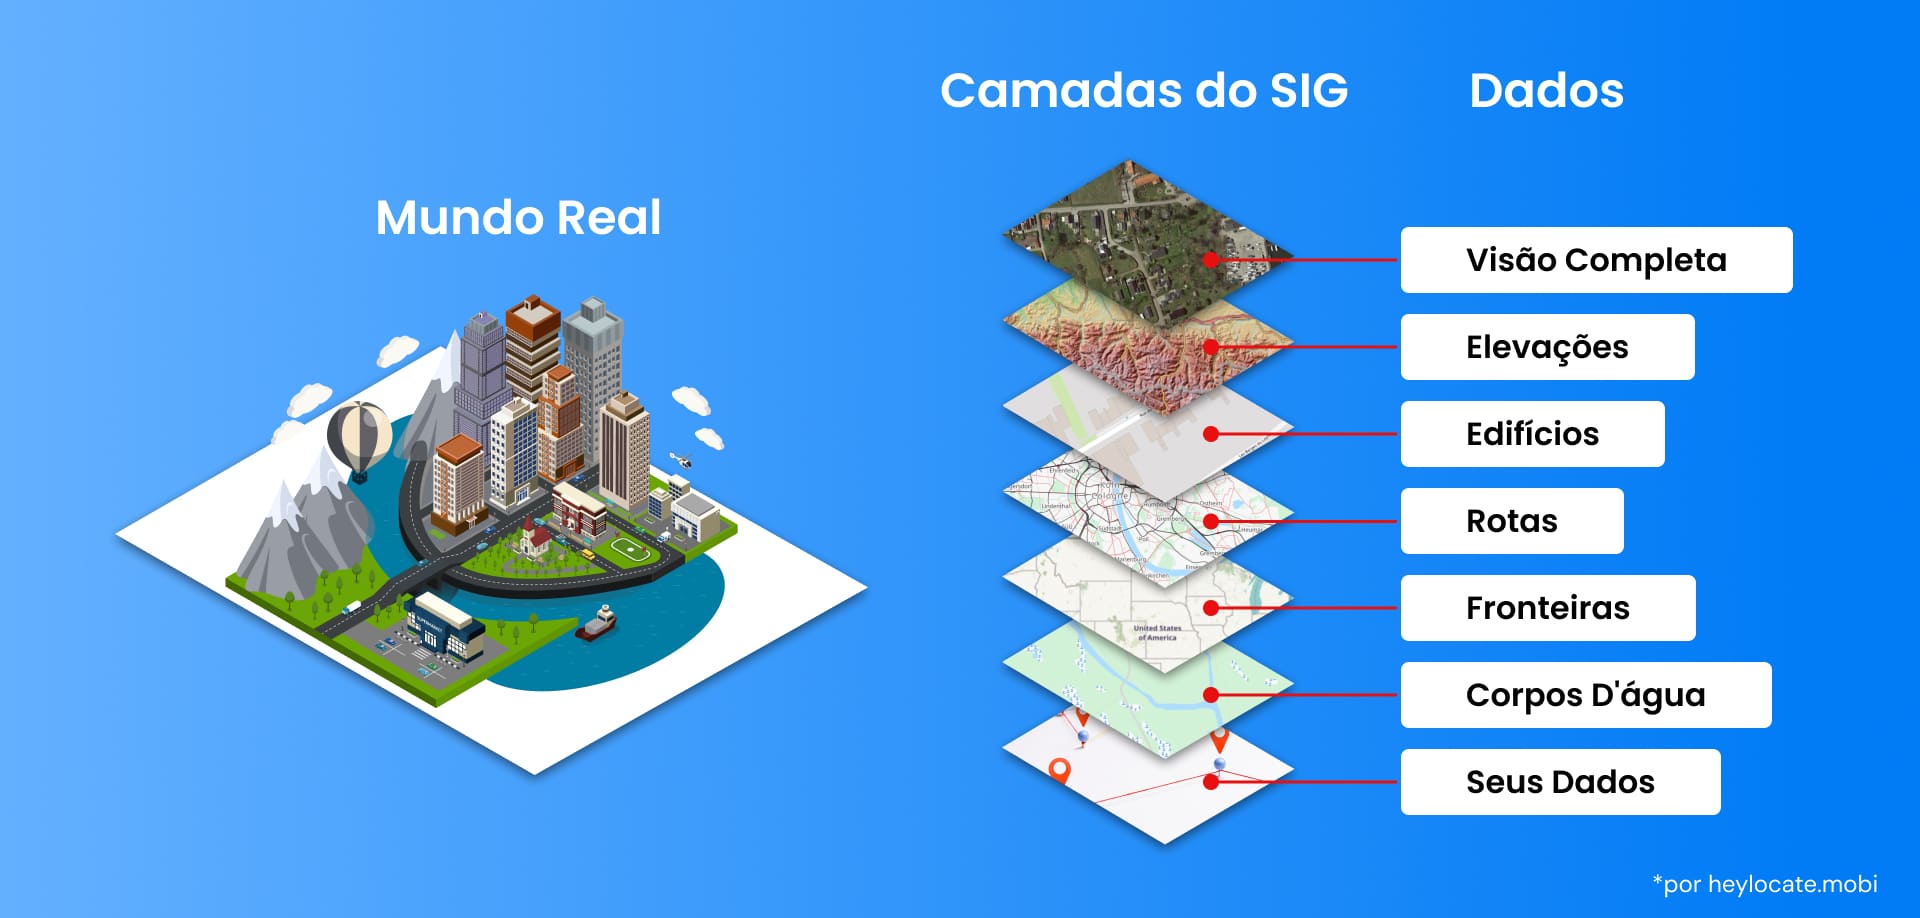 Uma ilustração que mostra como é o mundo real e quais camadas de SIG um mapa consiste para representá-lo